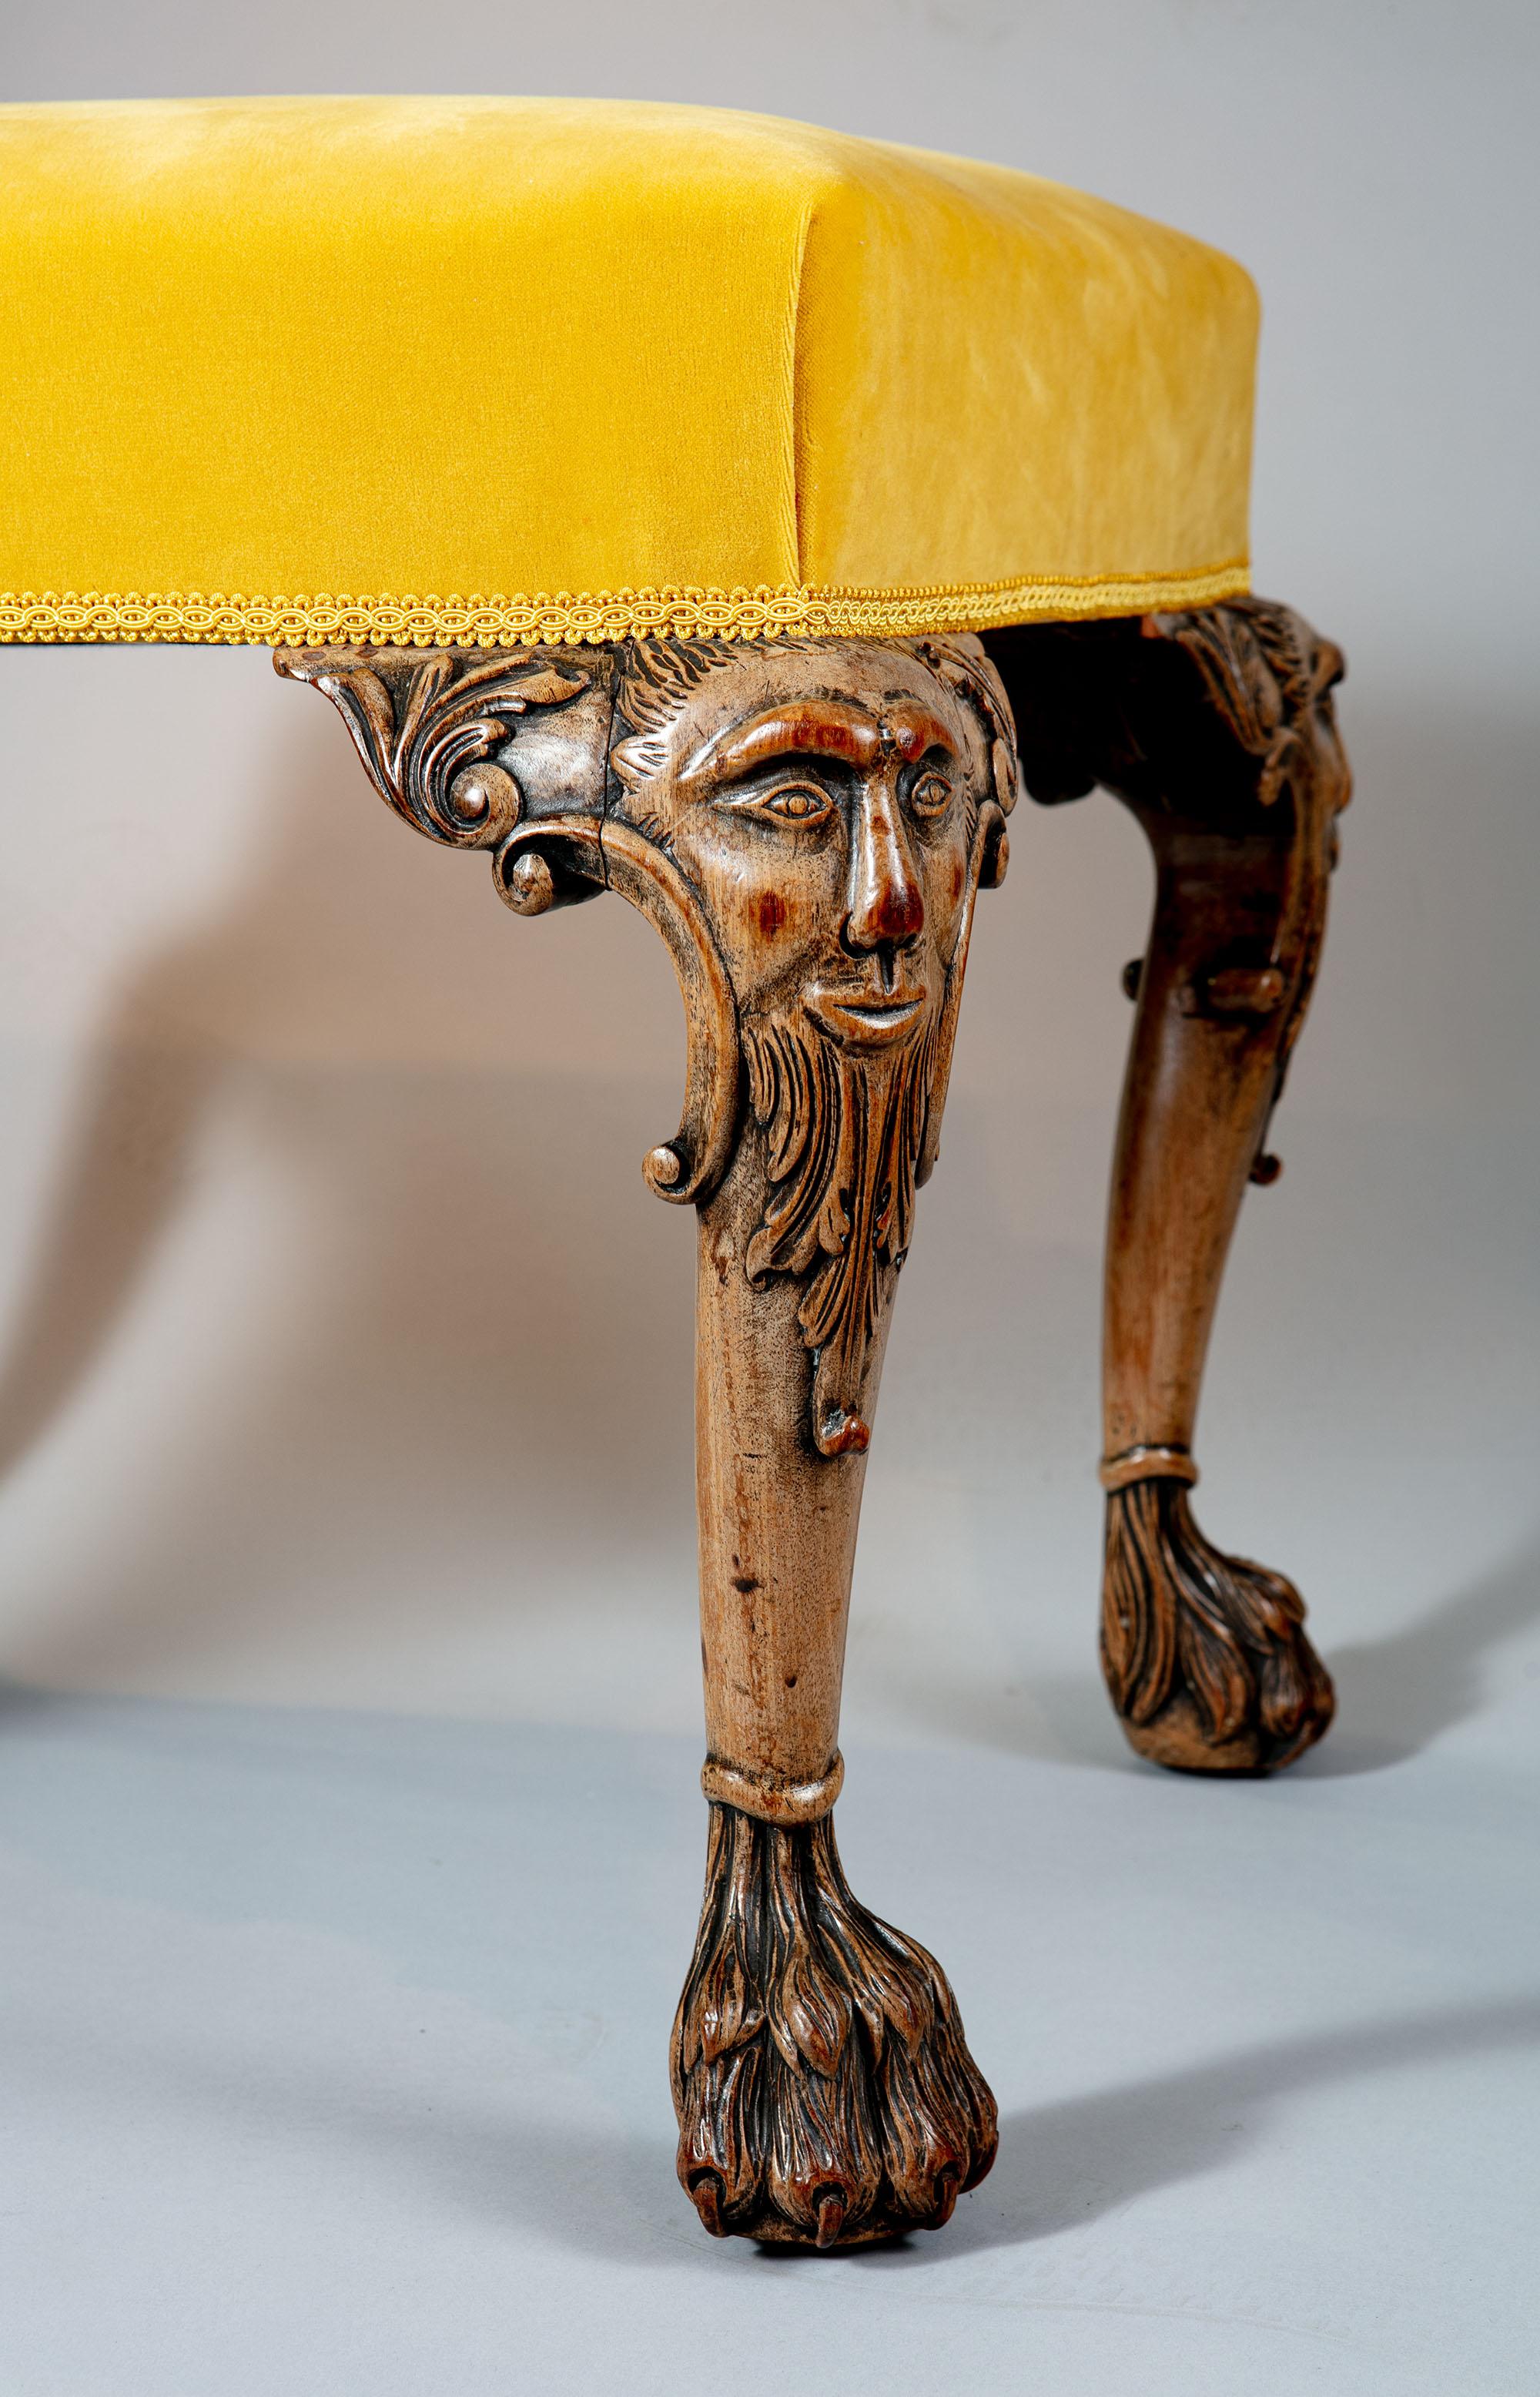 Nicholas Wells Antiquitäten freut sich, diesen feinen geschnitzten Mahagoni-Hocker aus dem 19. Jahrhundert anbieten zu können, der mit gelbem Samt neu gepolstert ist. Die Cabriole-Beine sind mit Abbildern des mystischen Grünen Mannes, mit C-Rollen